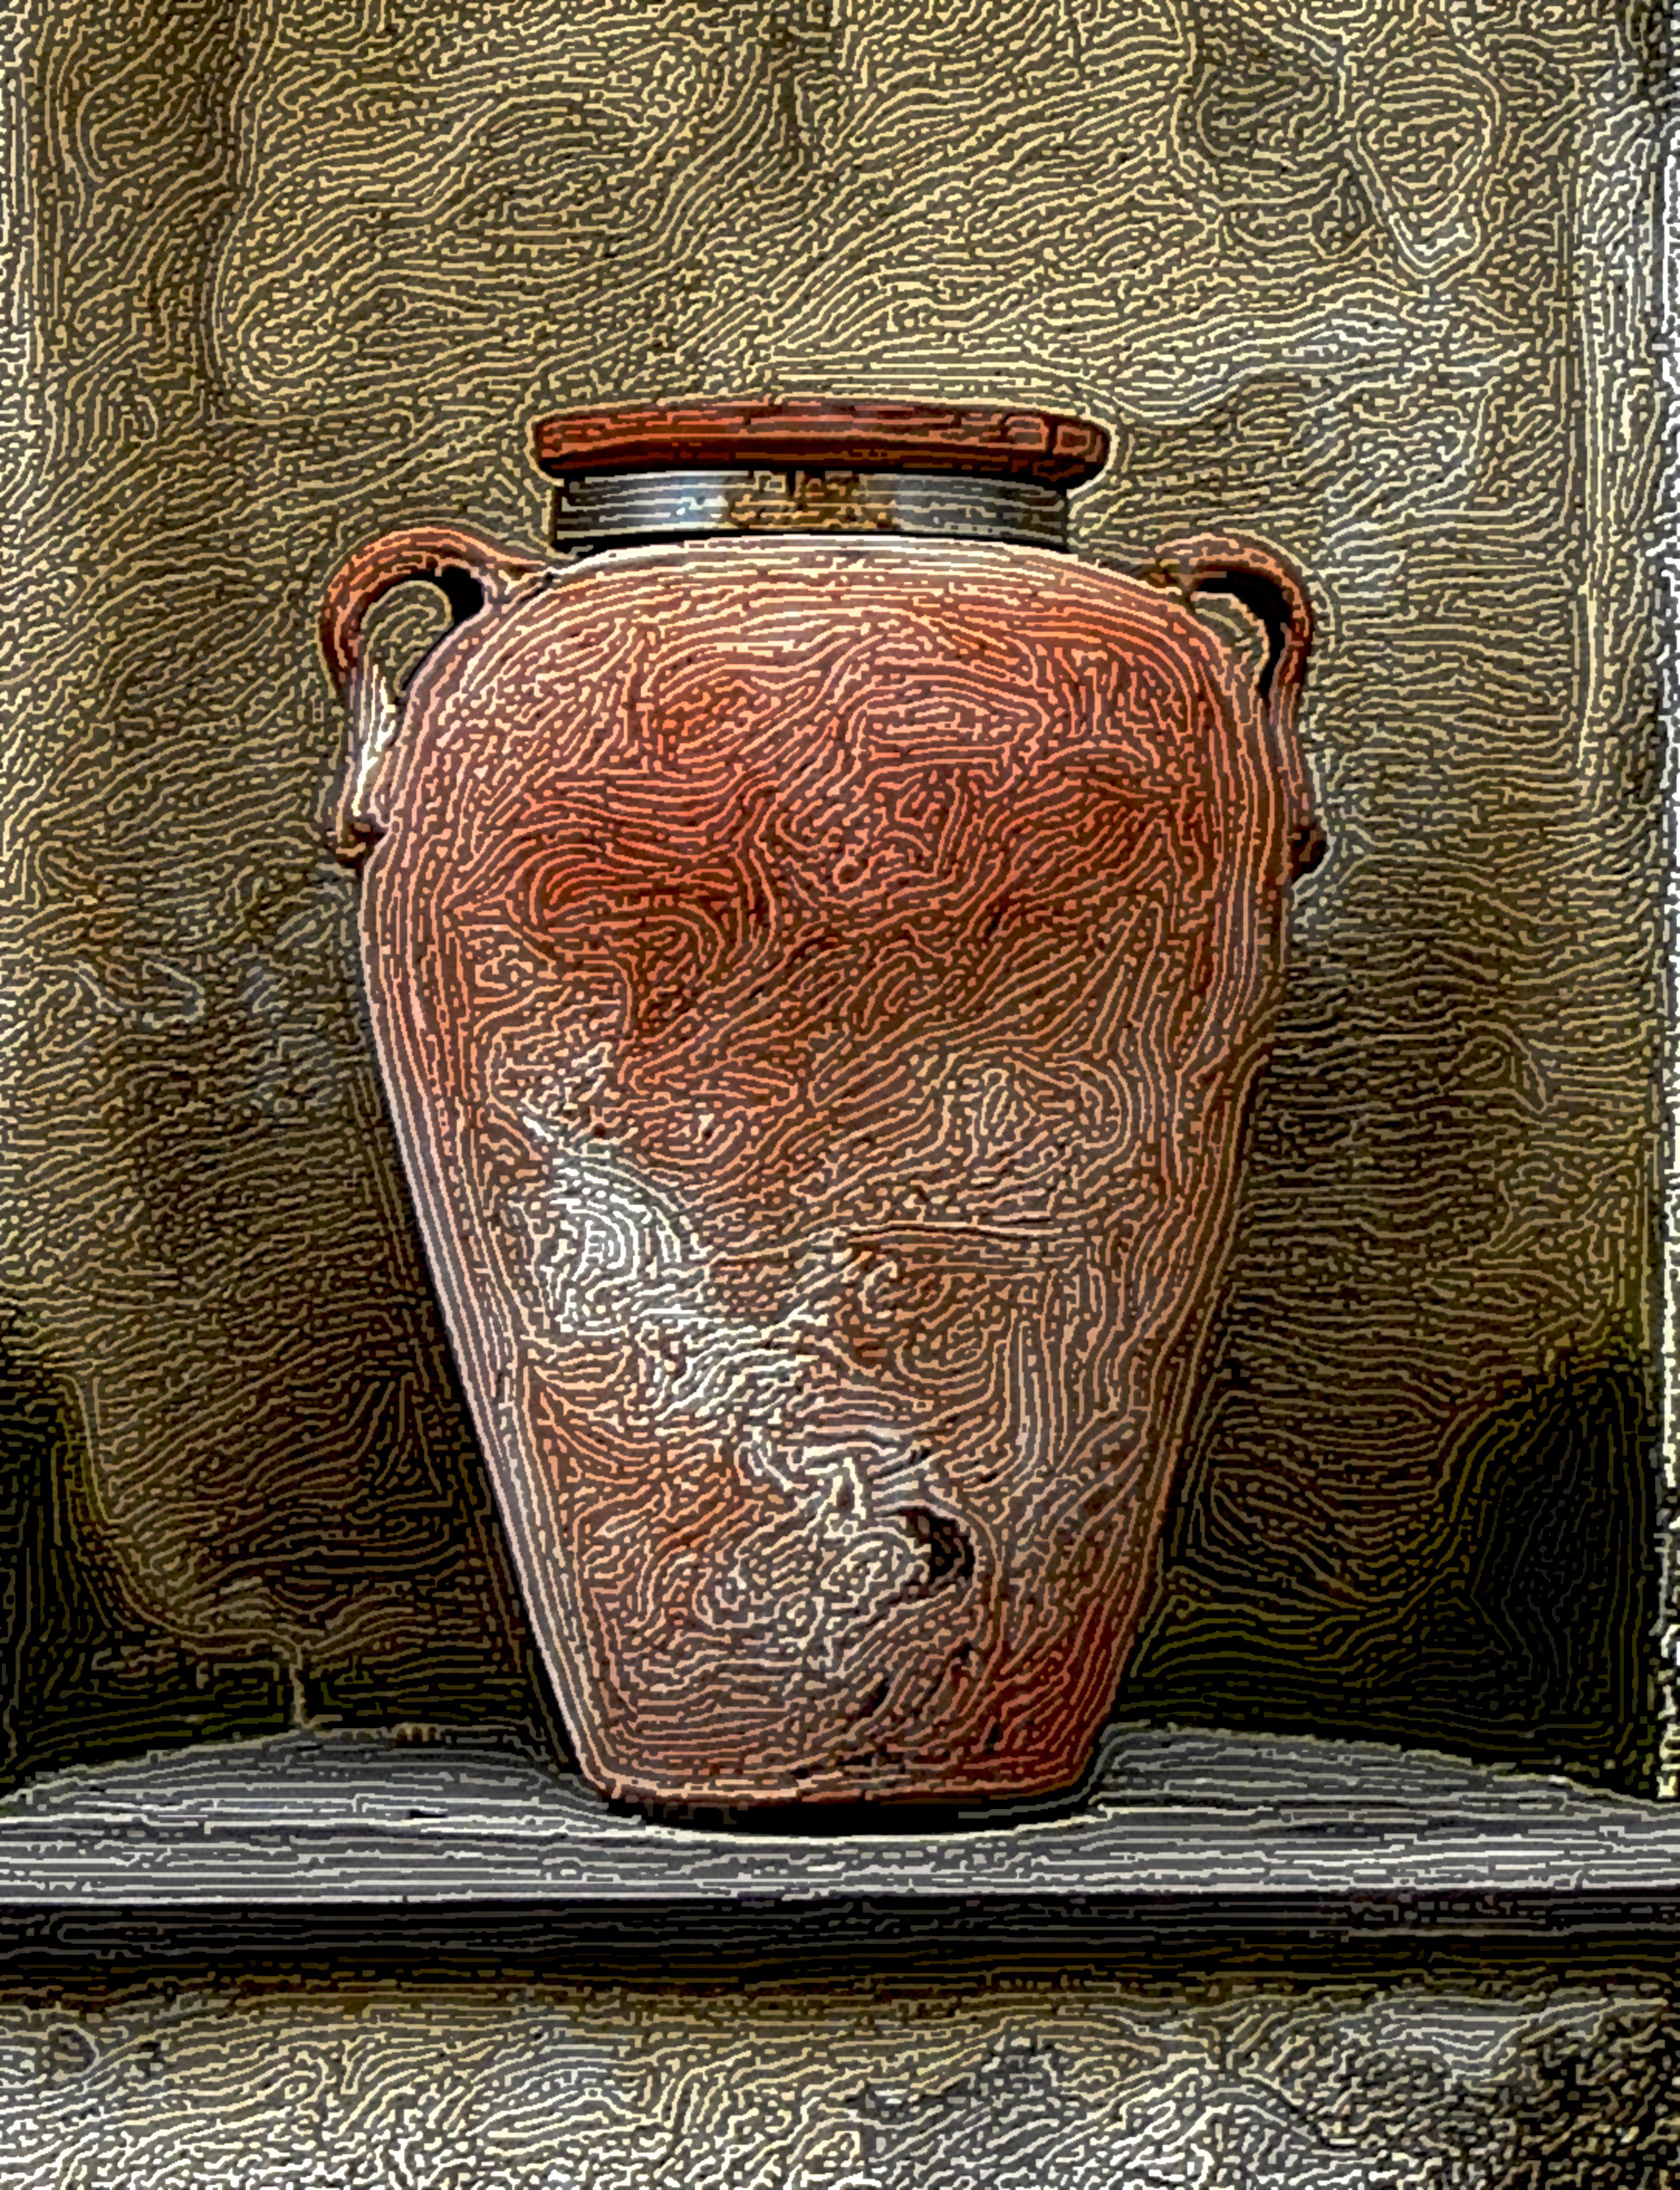 ancient-pots-1397299_DN_Graphics_StringyLook_D.jpg